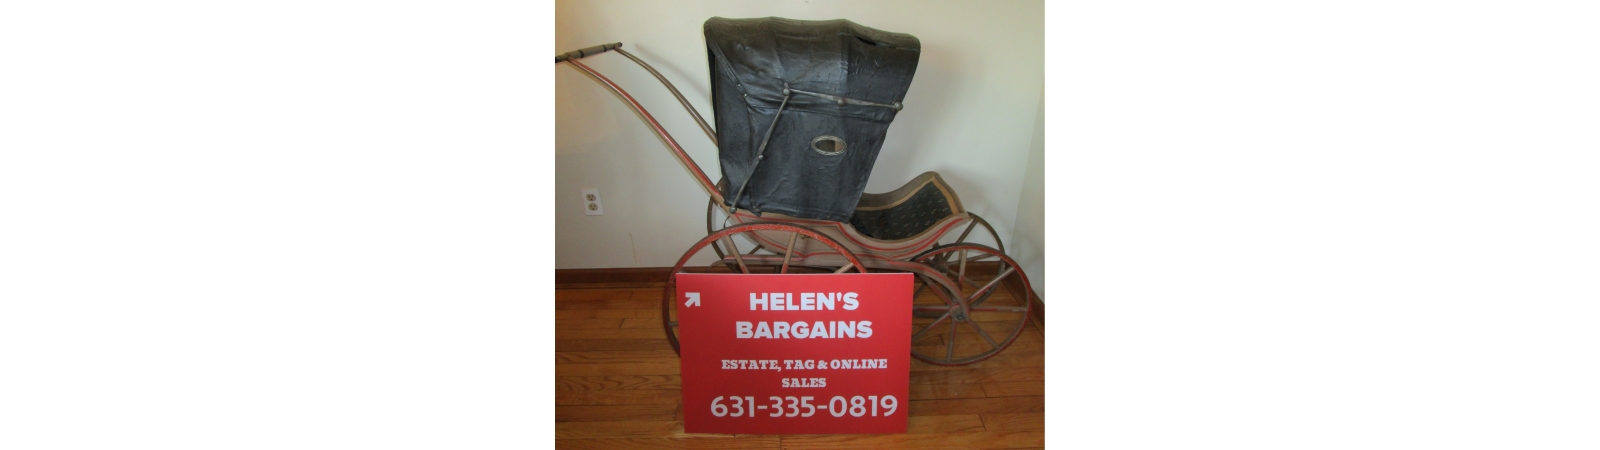 Helen's Bargains | AuctionNinja